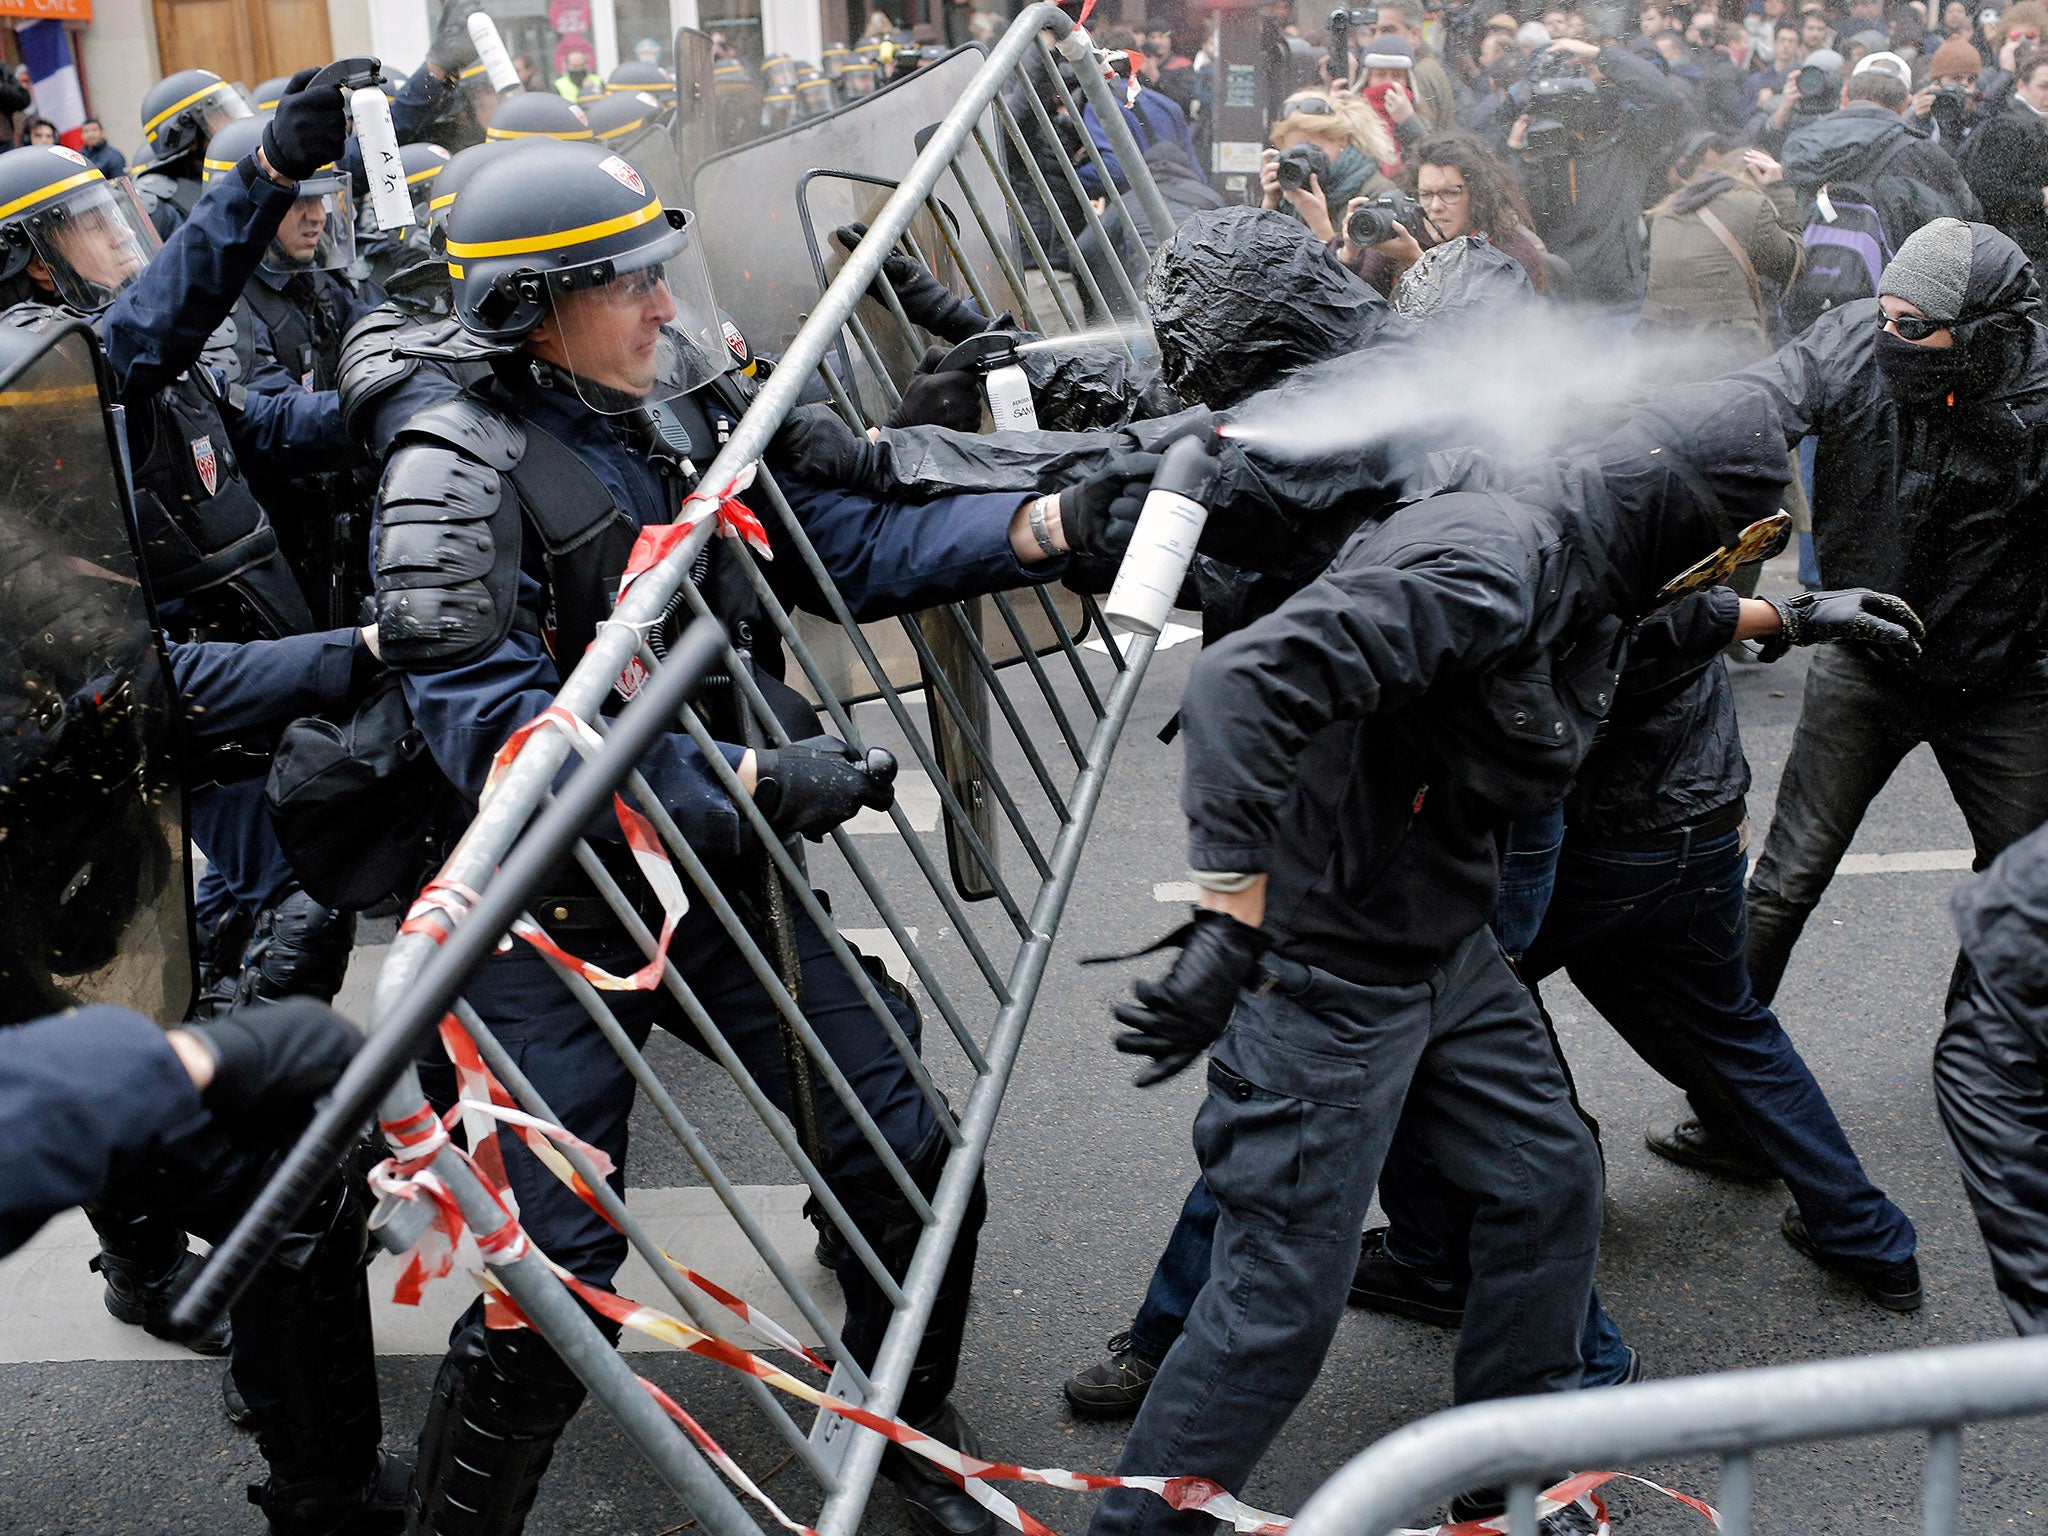 Policemen fight with climate change activists at the Place de la Republique in Paris